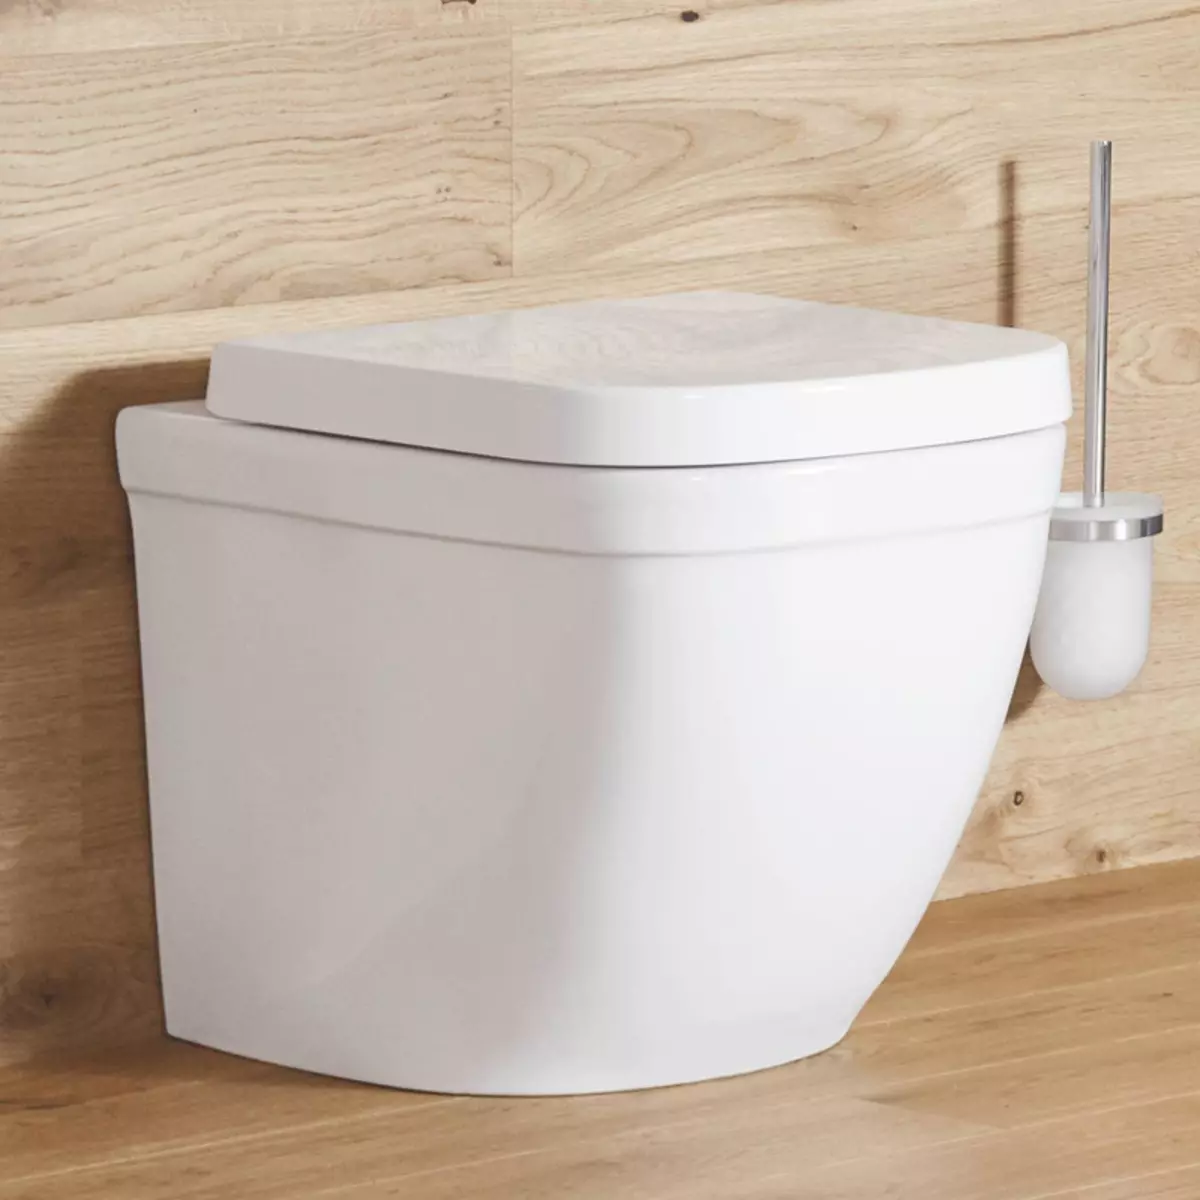 Toiletbak met skuins release: Ingevoerde Lager Unitaz-Compact, Edition Corner, Cable Compact toilet en ander modelle met skuins release 10523_11